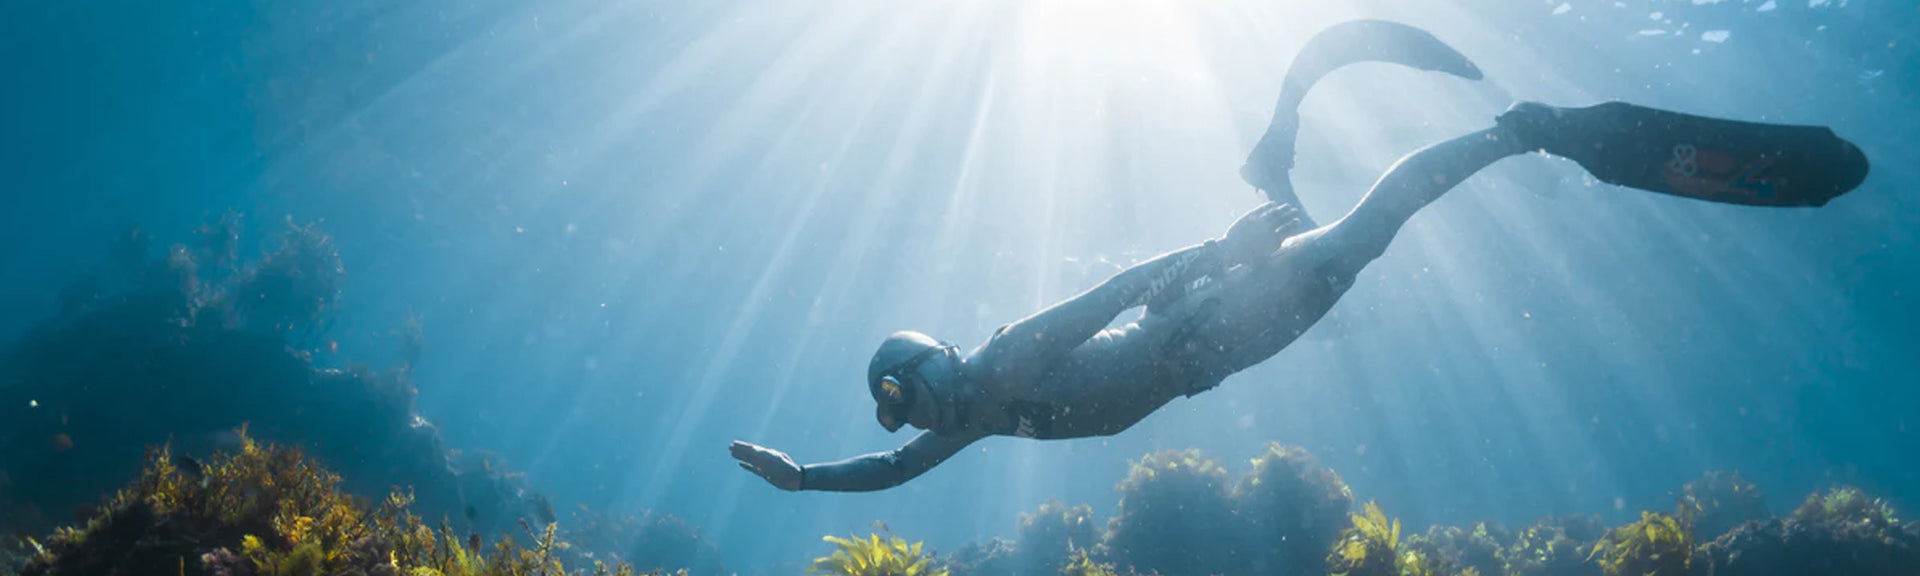 PADI Freediving Courses at Dream Divers